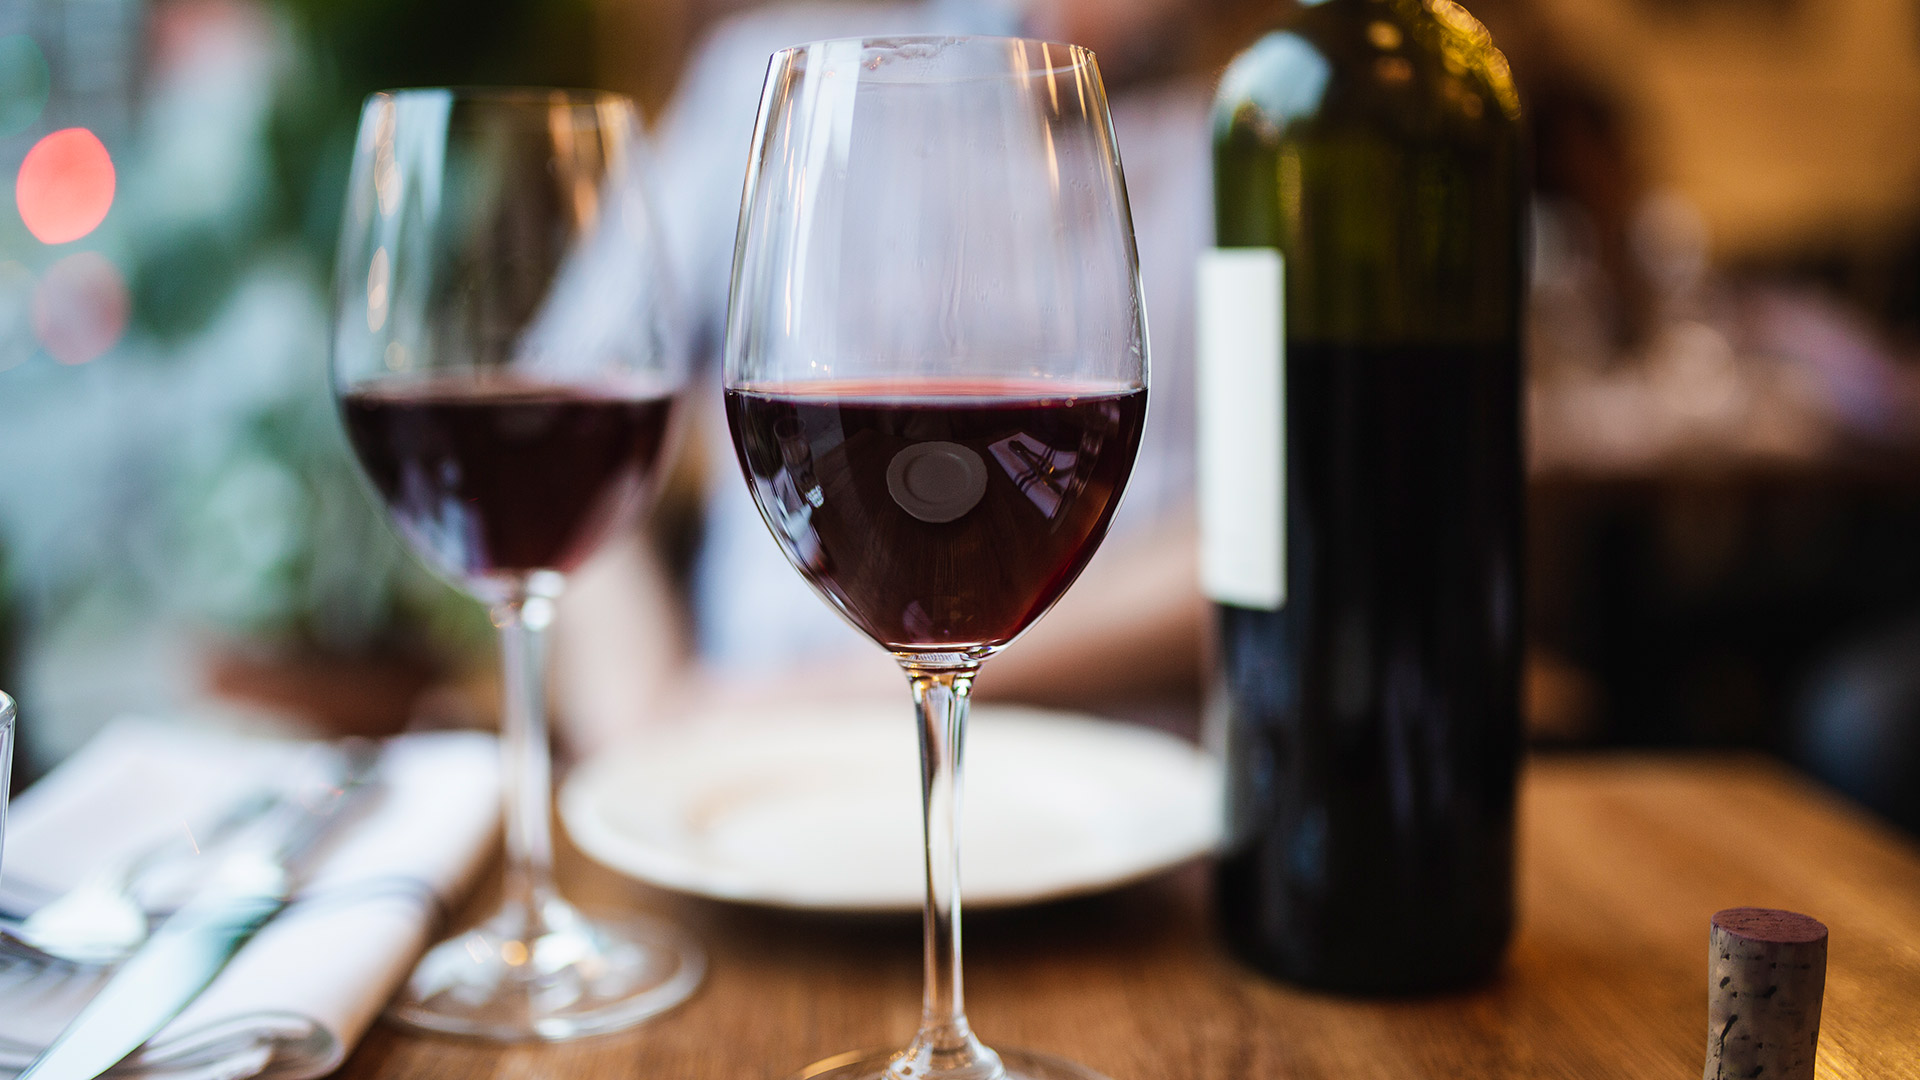 La miricetina, un flavonol que abunda en el vino tinto, trae beneficios para nuestro cerebro